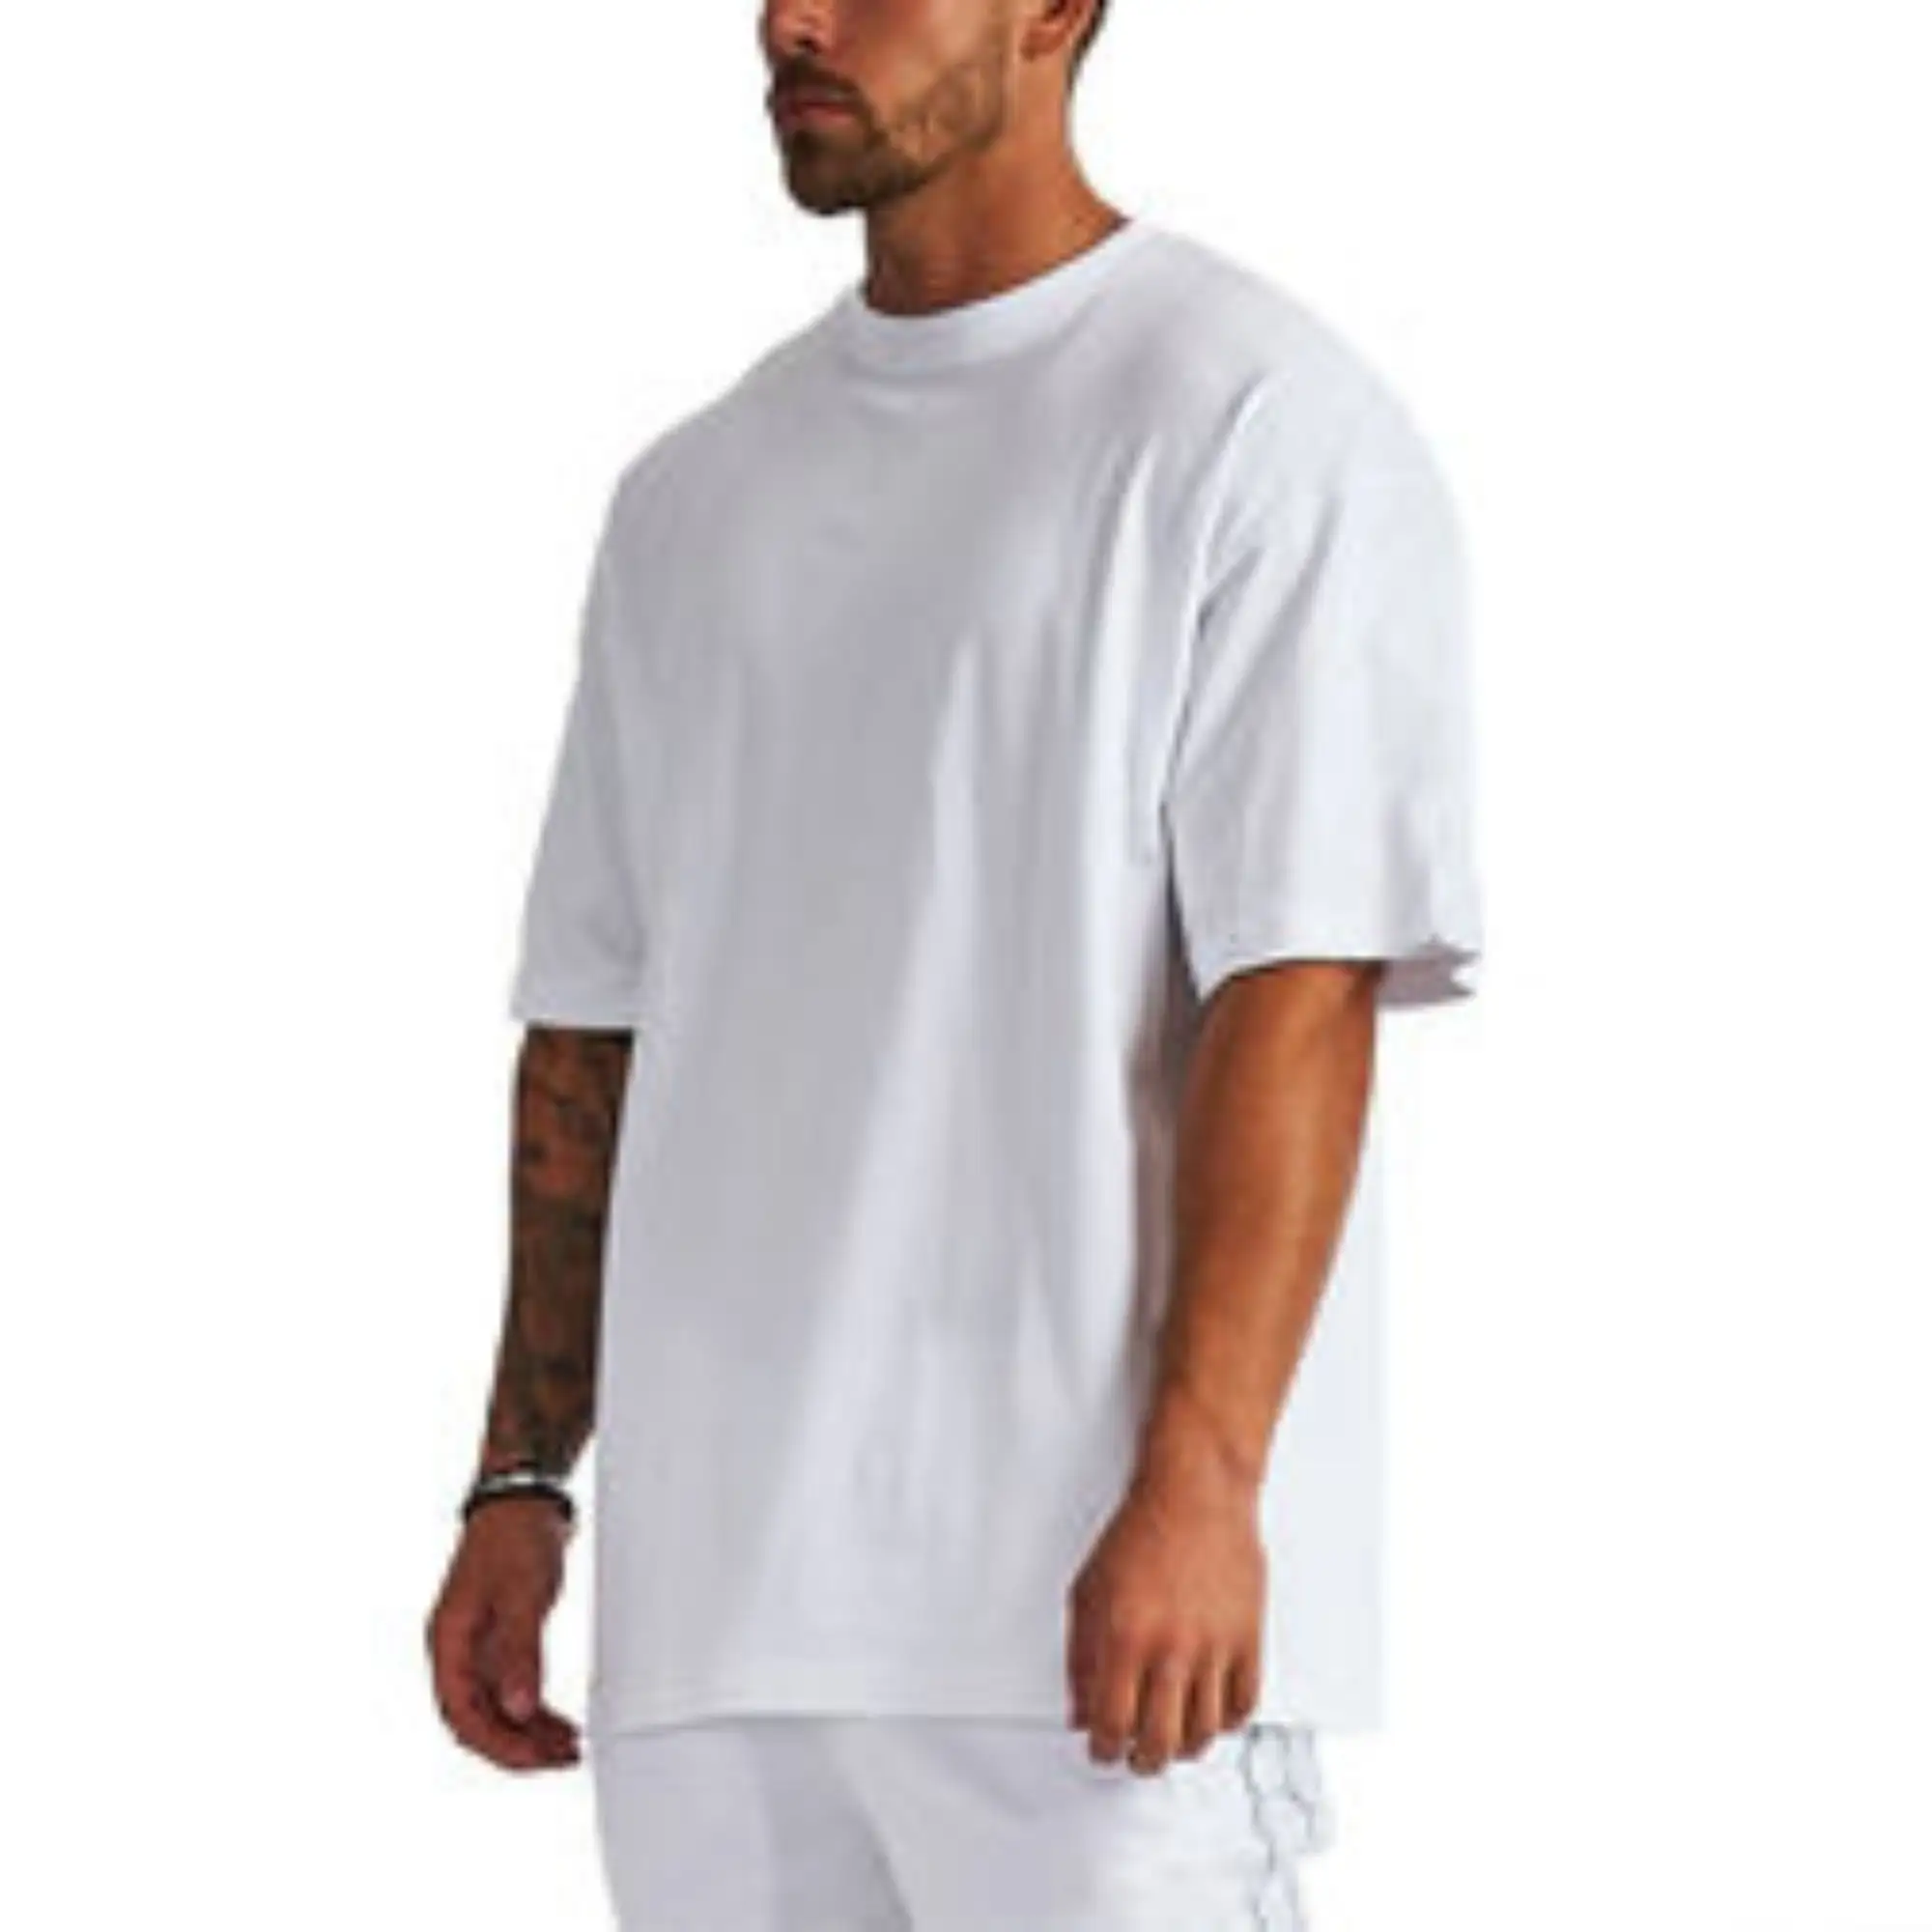 Мужская хлопковая футболка без рисунка, дизайнерская футболка большого размера с вырезом на плечах, качественные футболки с принтом на заказ